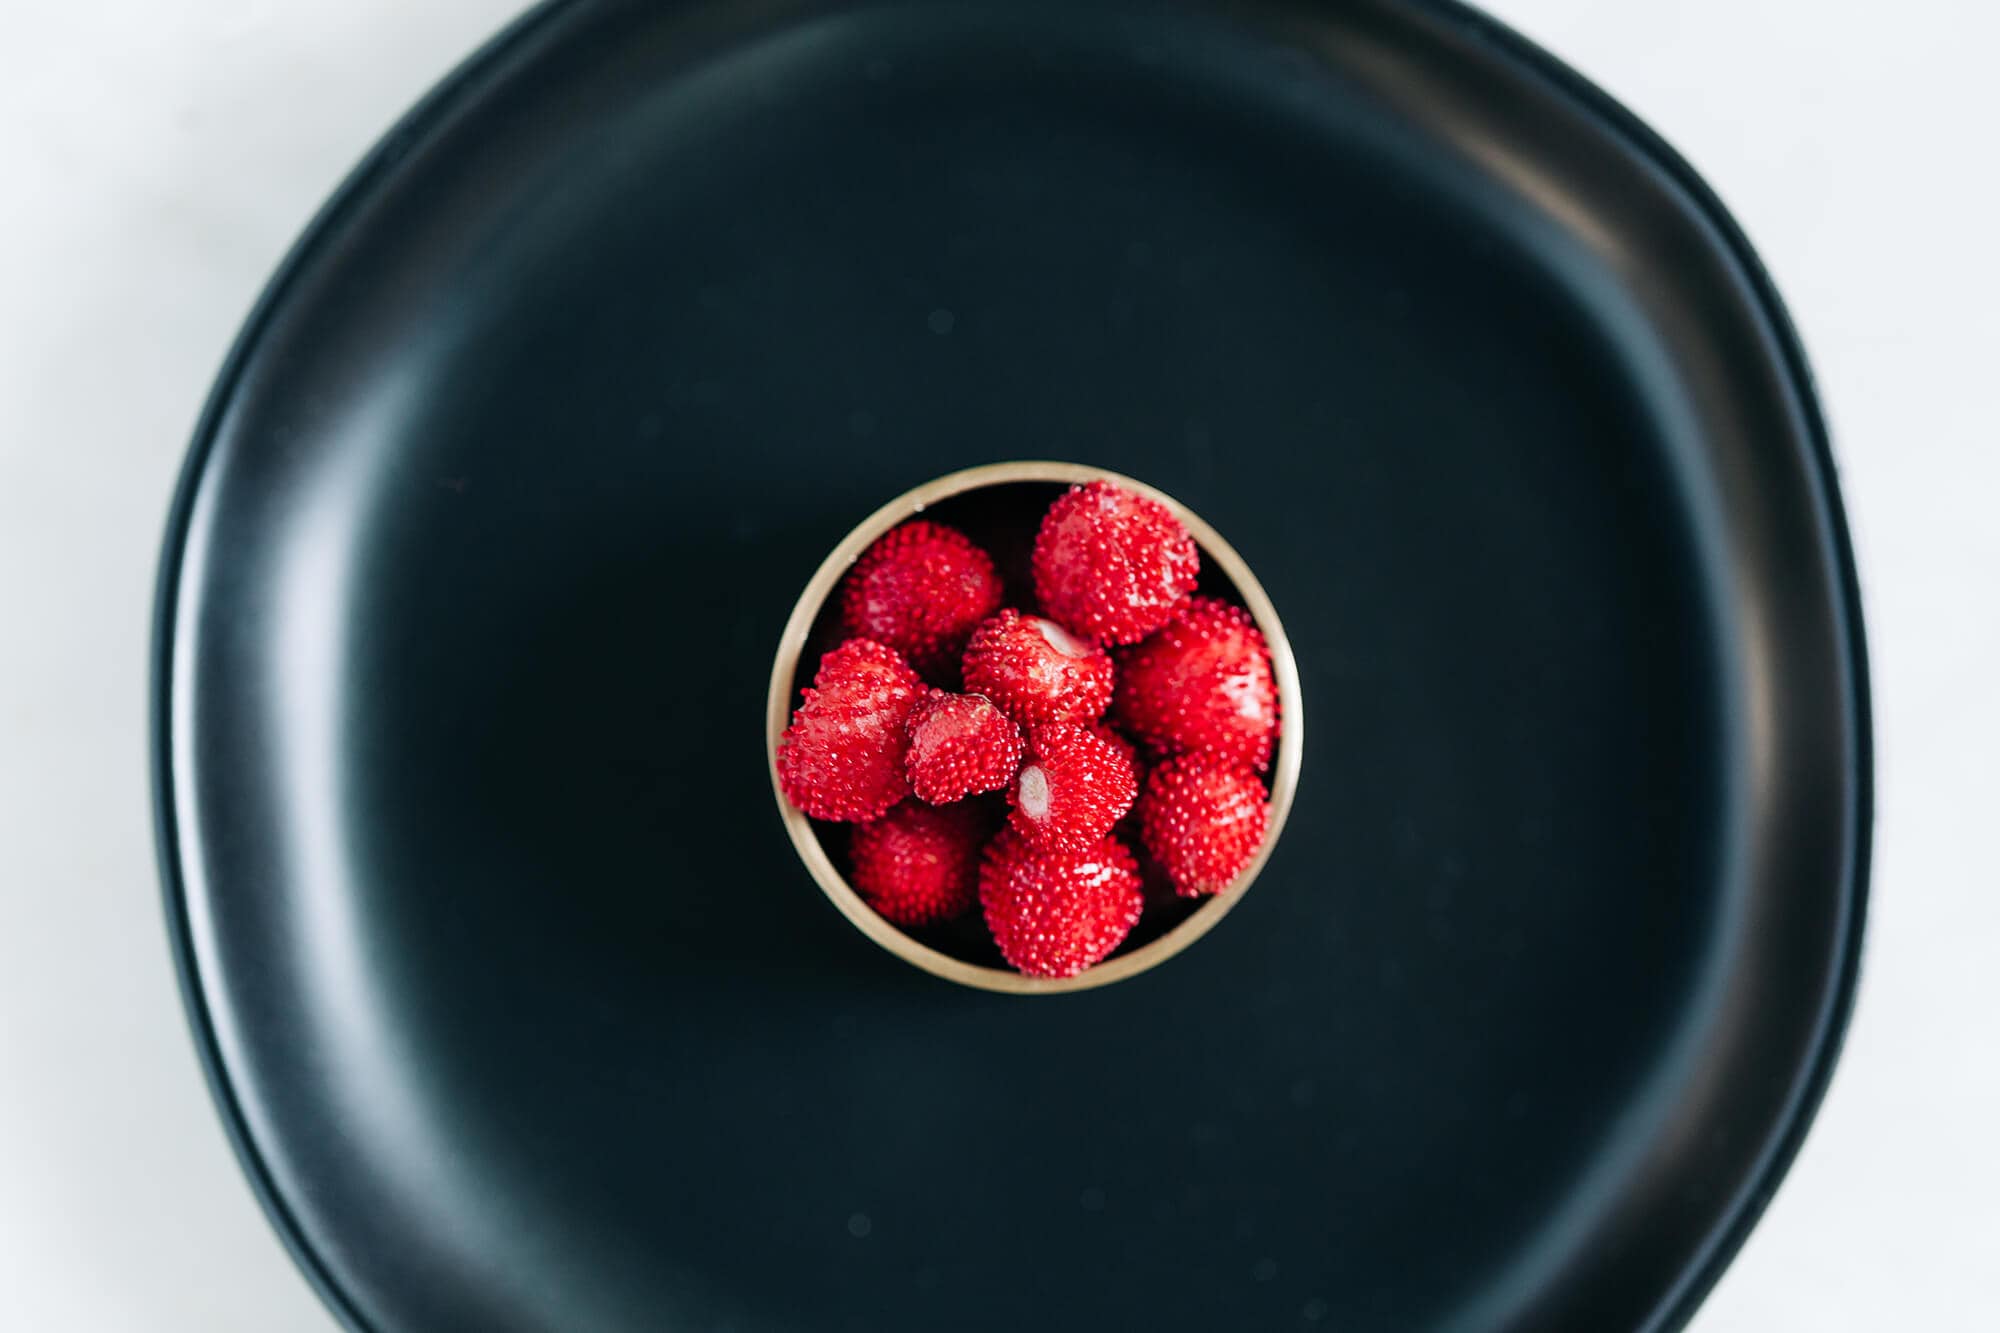 Plating of snake berries inidan mockberry in cup on black plate